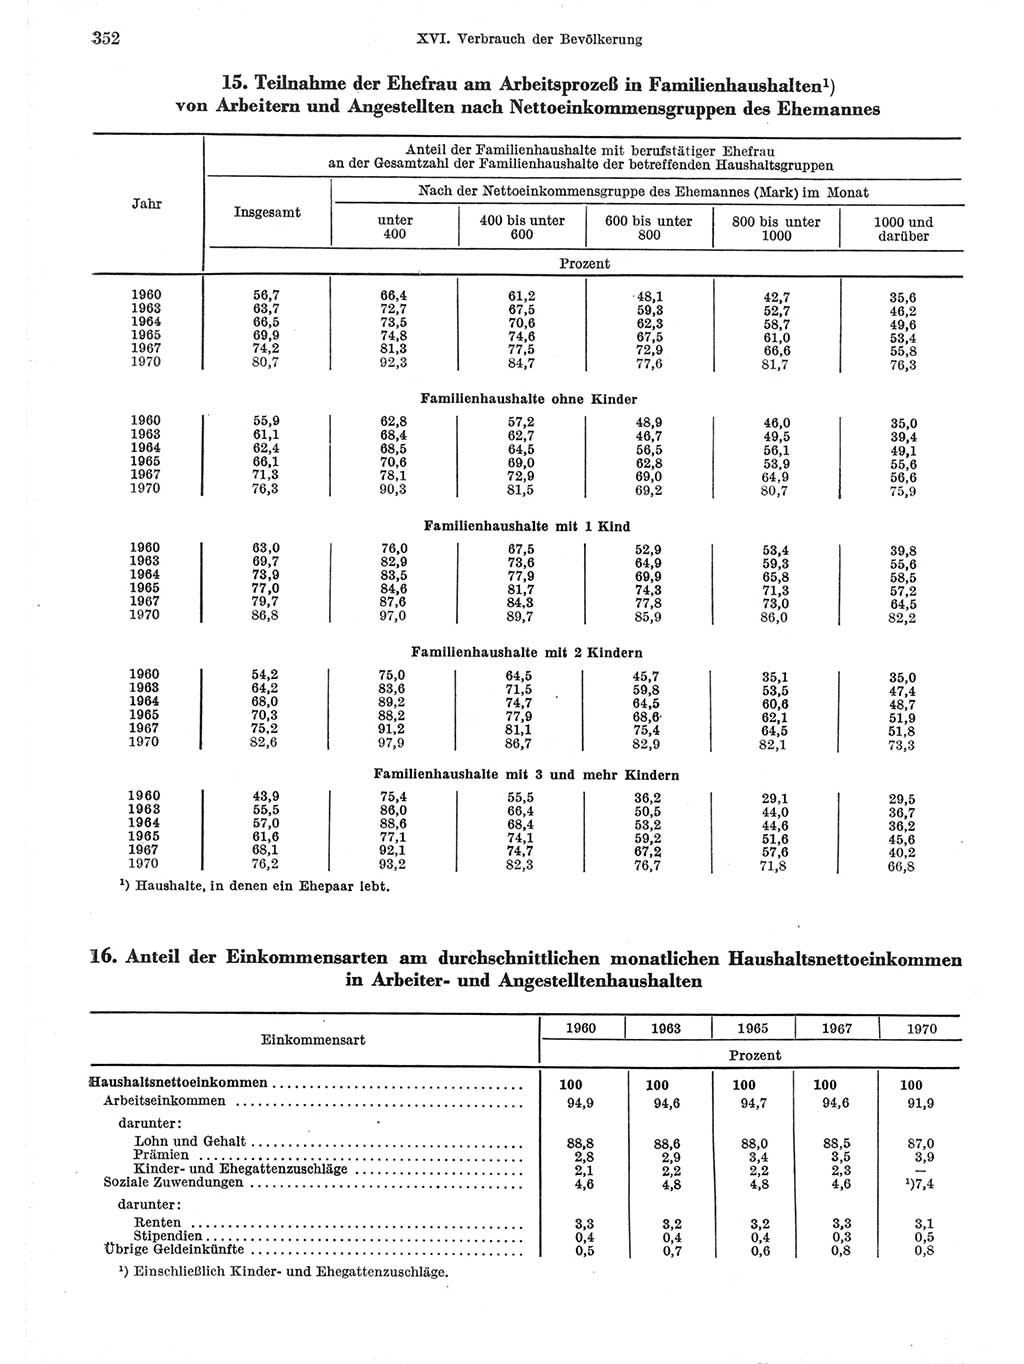 Statistisches Jahrbuch der Deutschen Demokratischen Republik (DDR) 1971, Seite 352 (Stat. Jb. DDR 1971, S. 352)